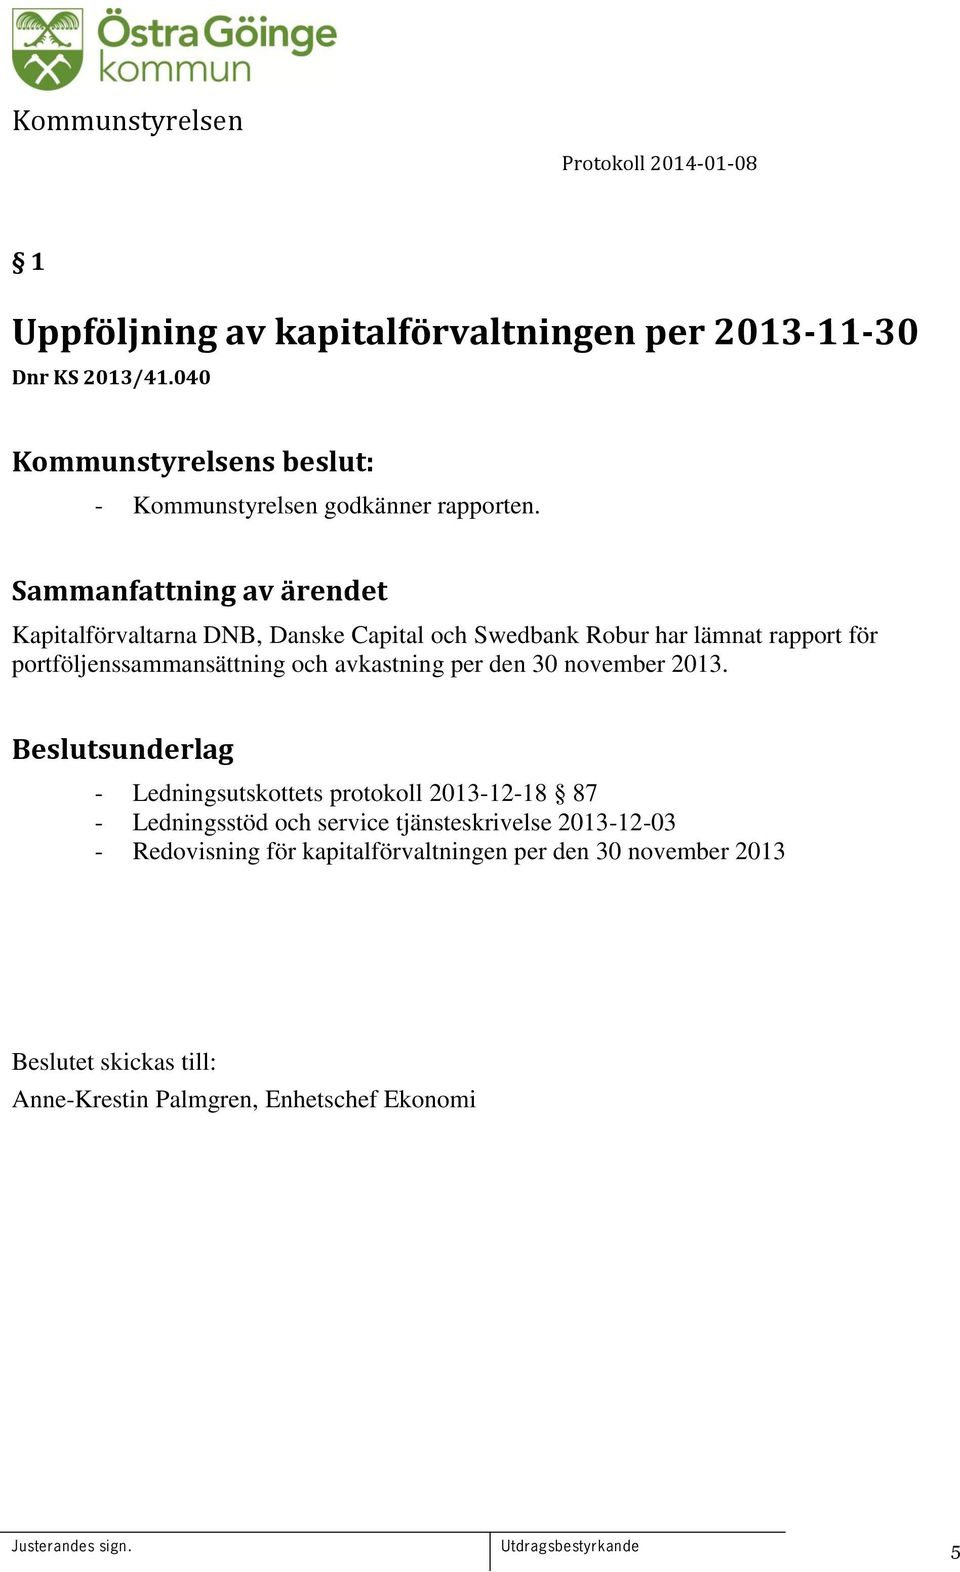 Kapitalförvaltarna DNB, Danske Capital och Swedbank Robur har lämnat rapport för portföljenssammansättning och avkastning